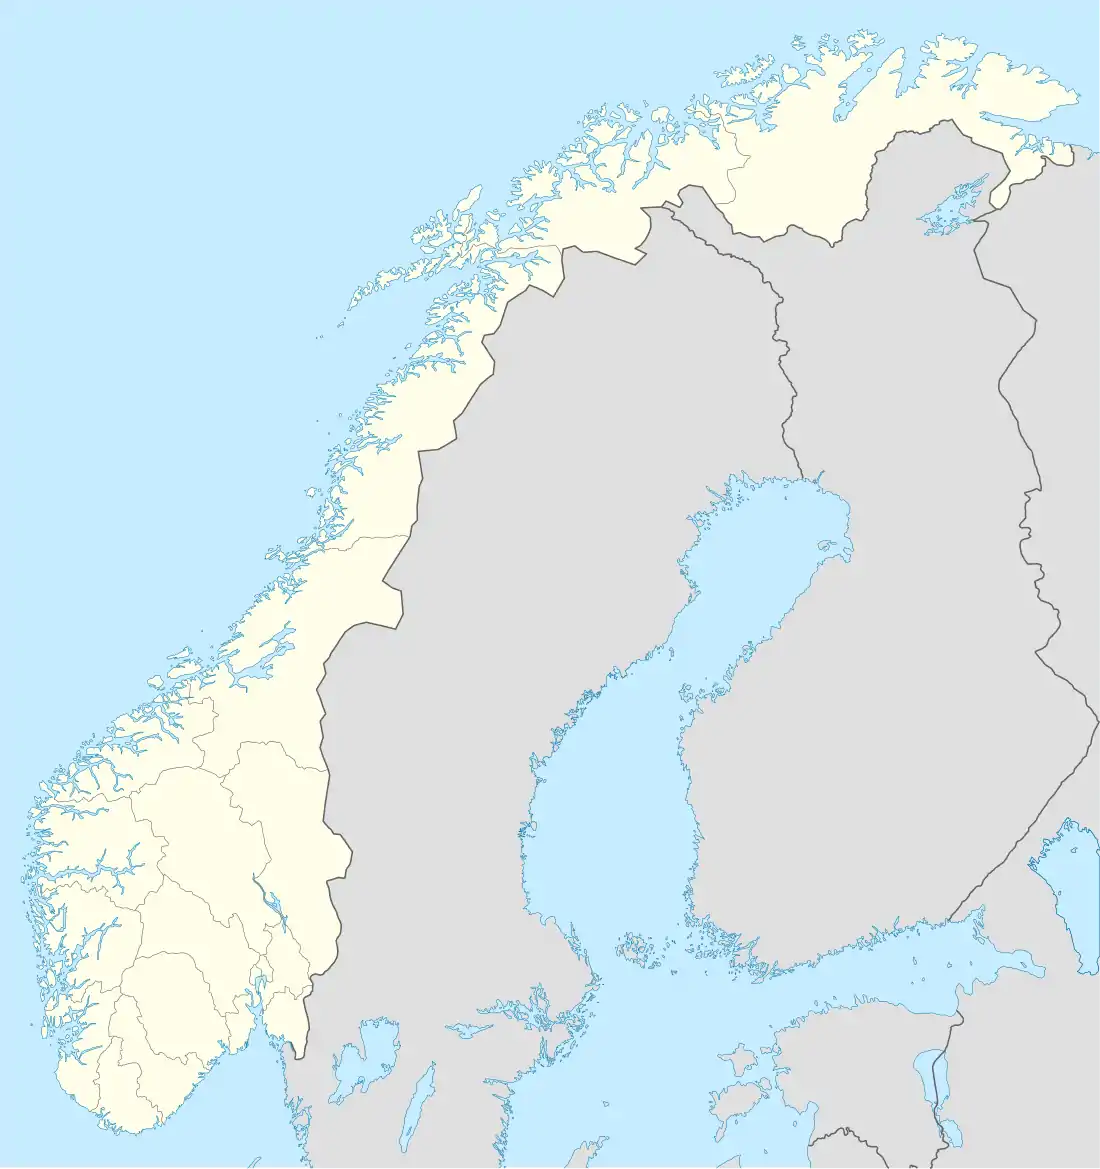 Troms og Finnmark fylke is located in Norway